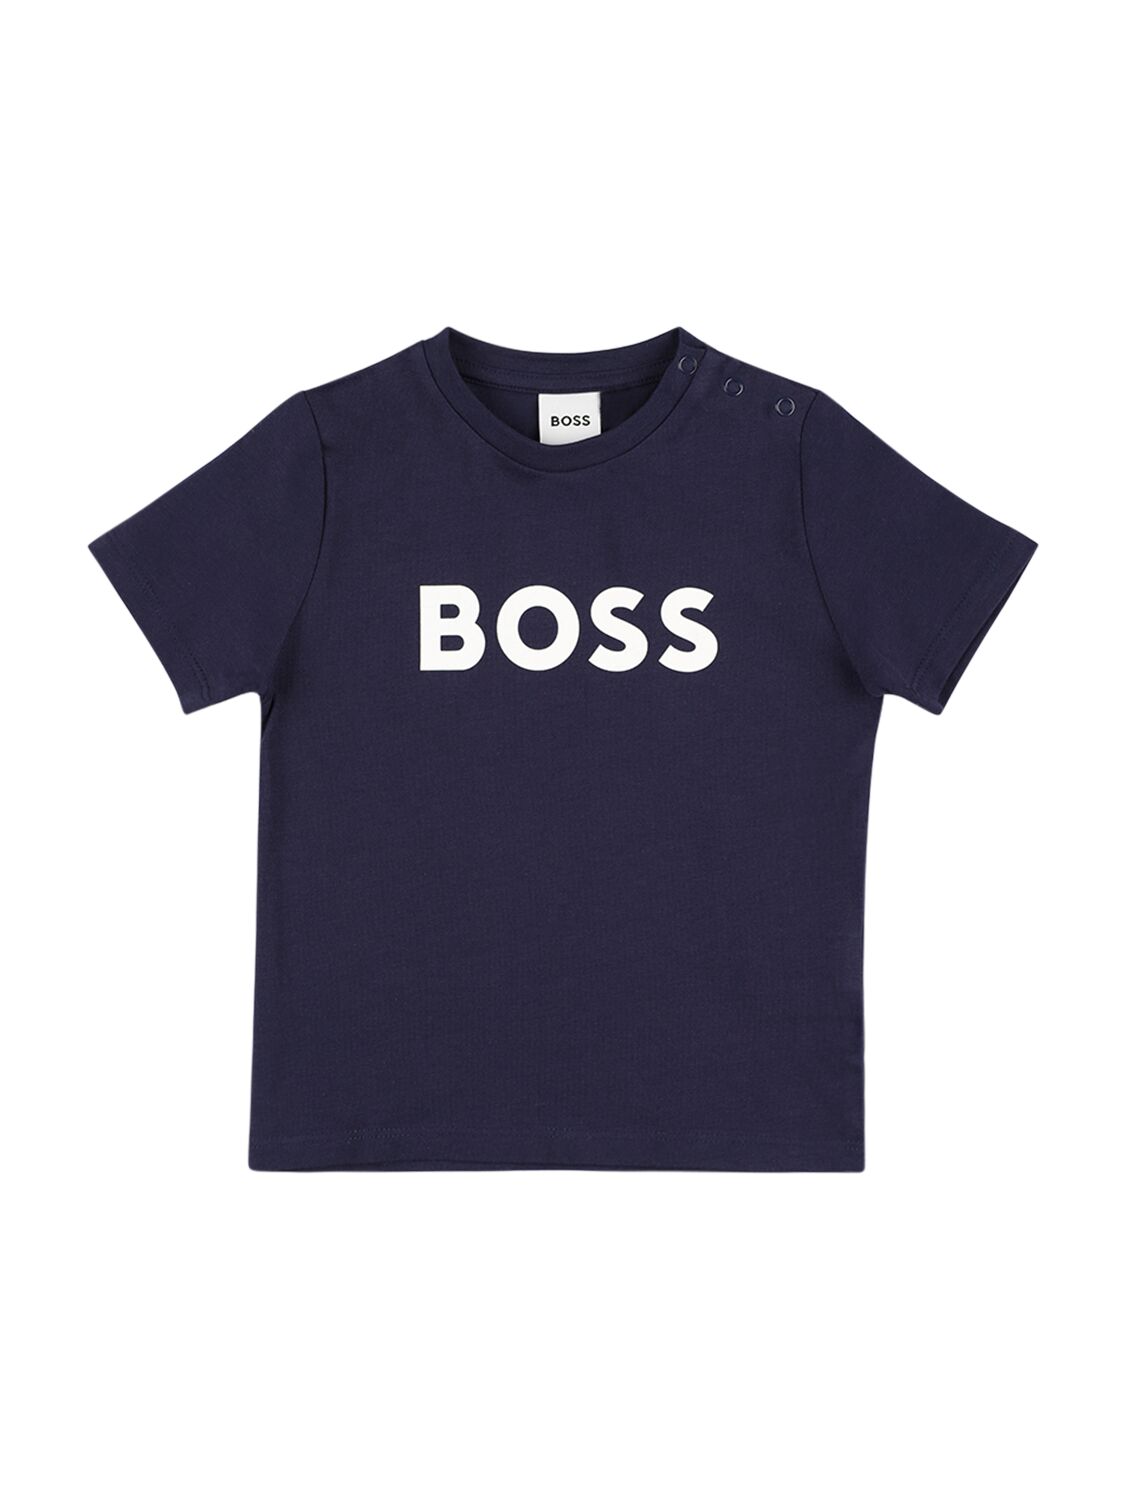 Hugo Boss Kids' Rubberized Logo Cotton Jersey T-shirt In Navy